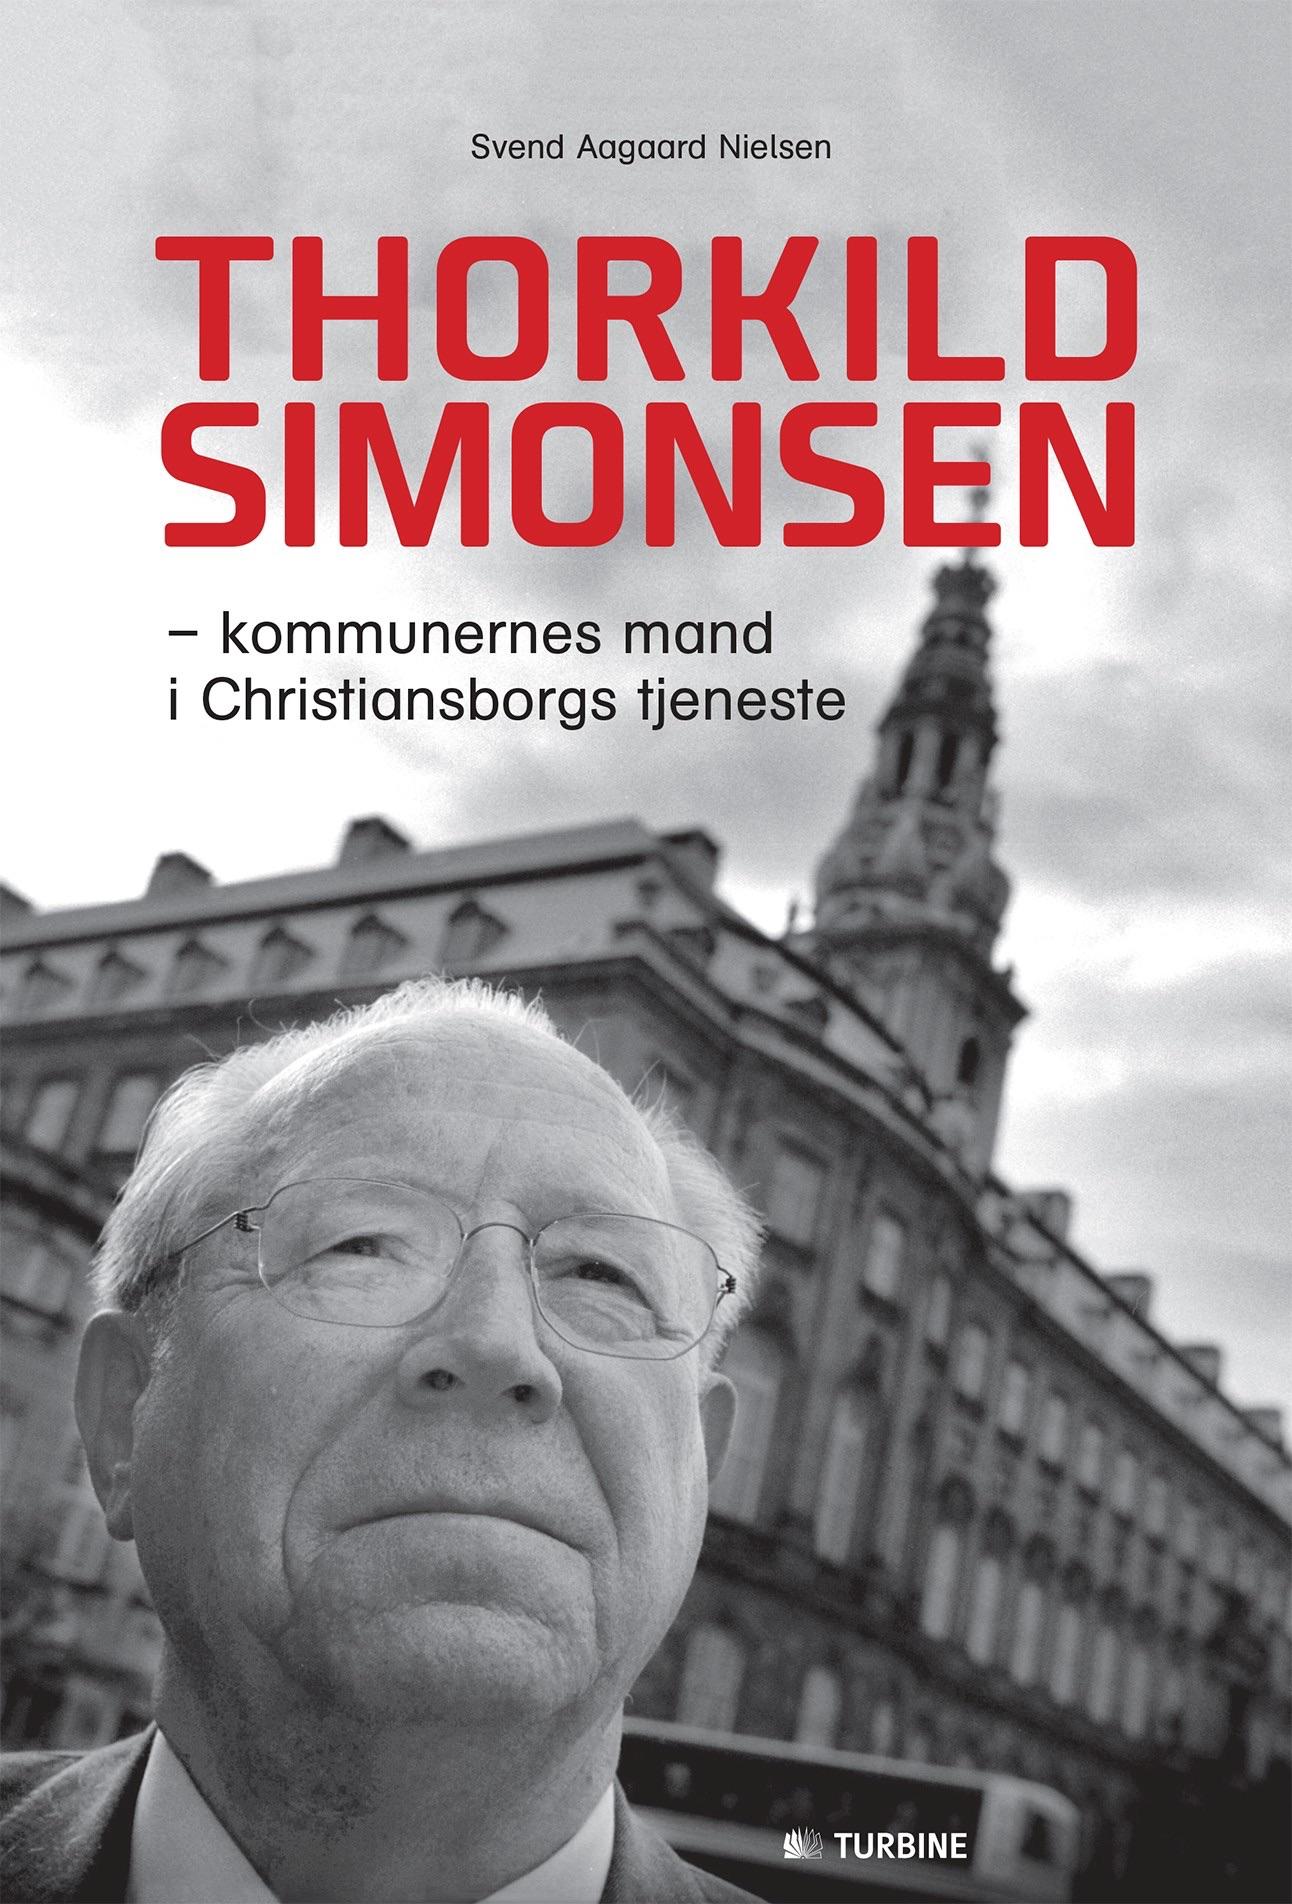 Thorkild Simonsen – kommunernes mand i Christiansborgs tjeneste
Af Svend Aagaard Nielsen
Turbine, 214 sider